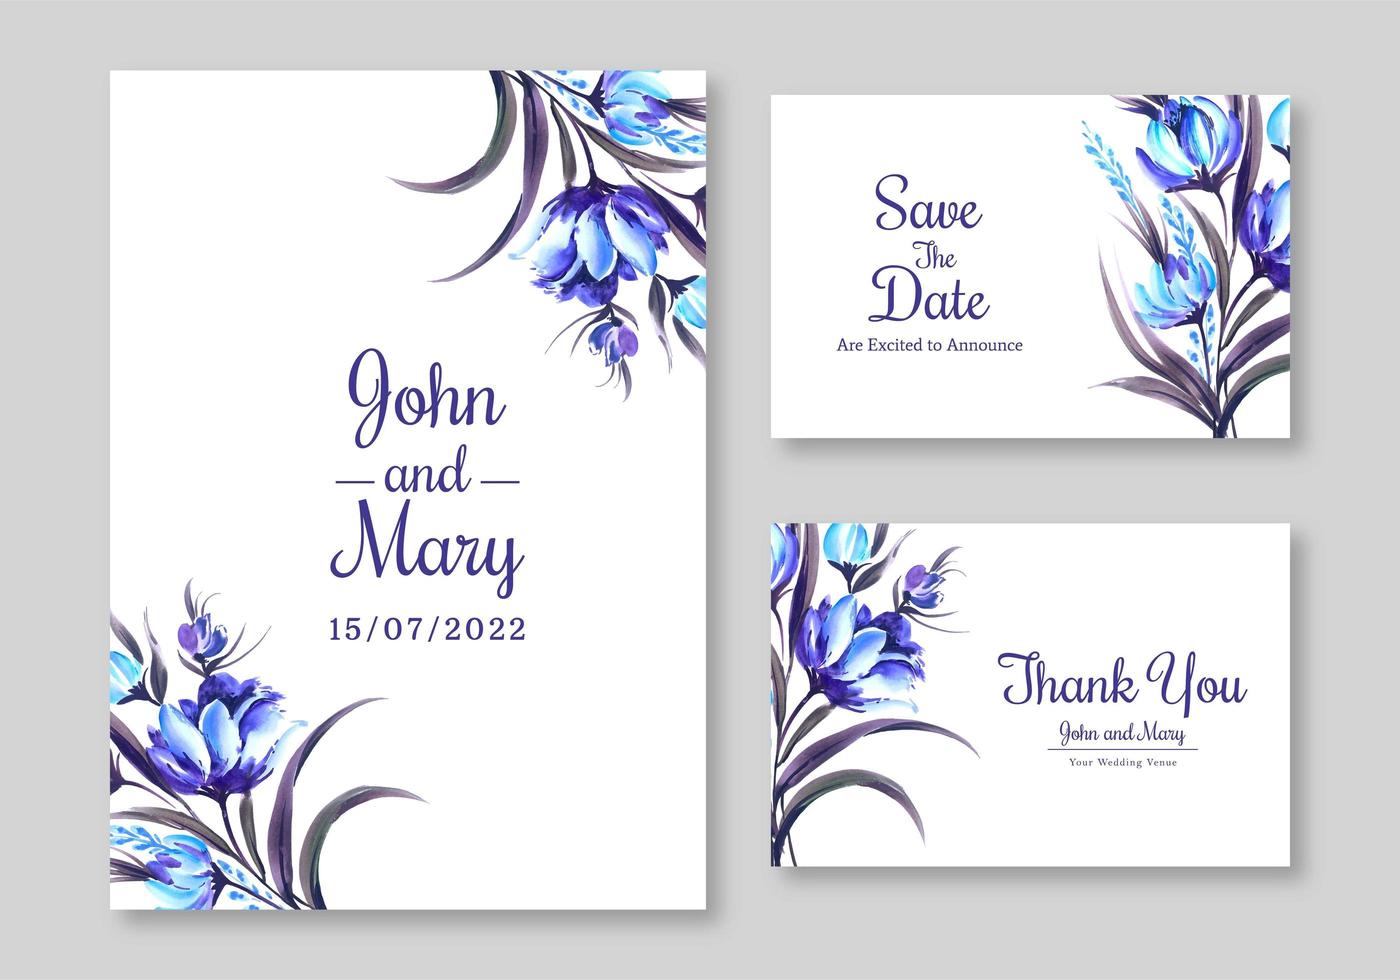 conjunto de convite de casamento floral azul vetor